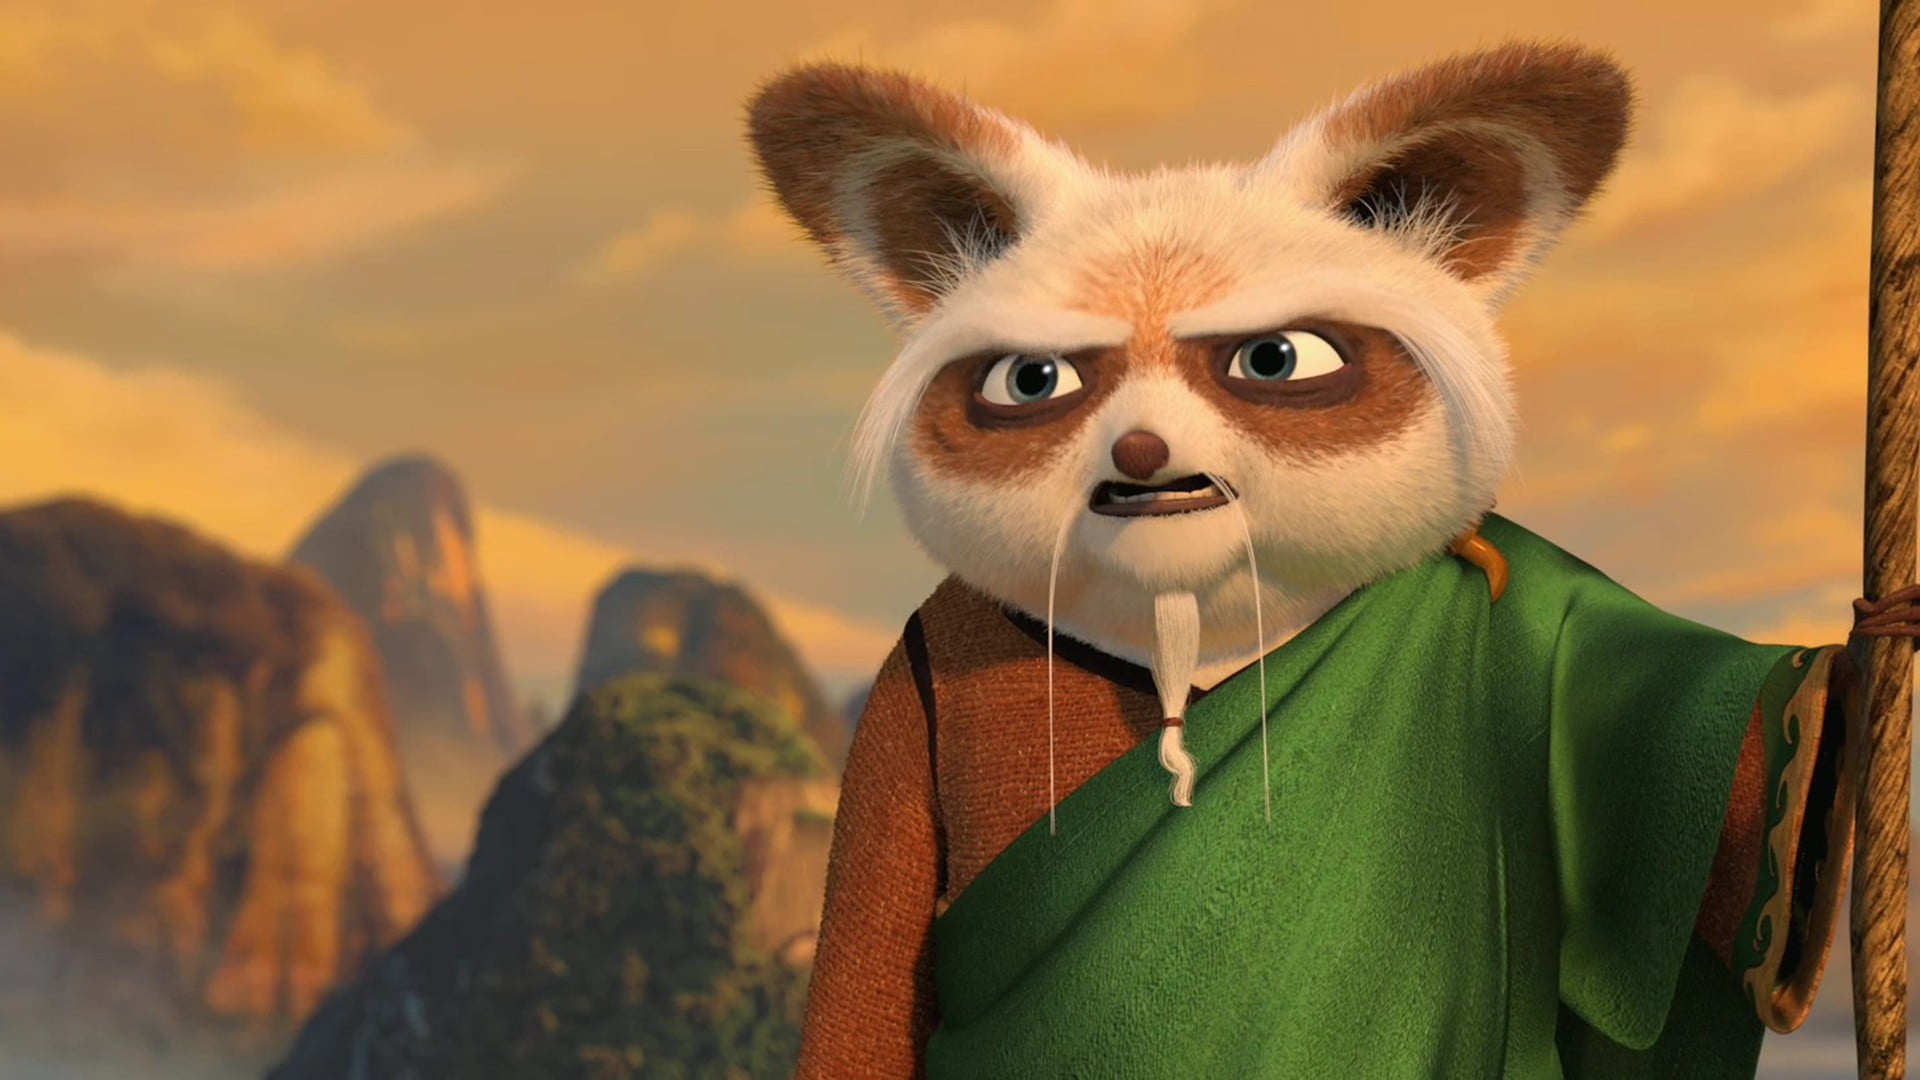 Master Shifu: Kung Fu Panda, The current senior mentor of the Jade Palace. 1920x1080 Full HD Wallpaper.